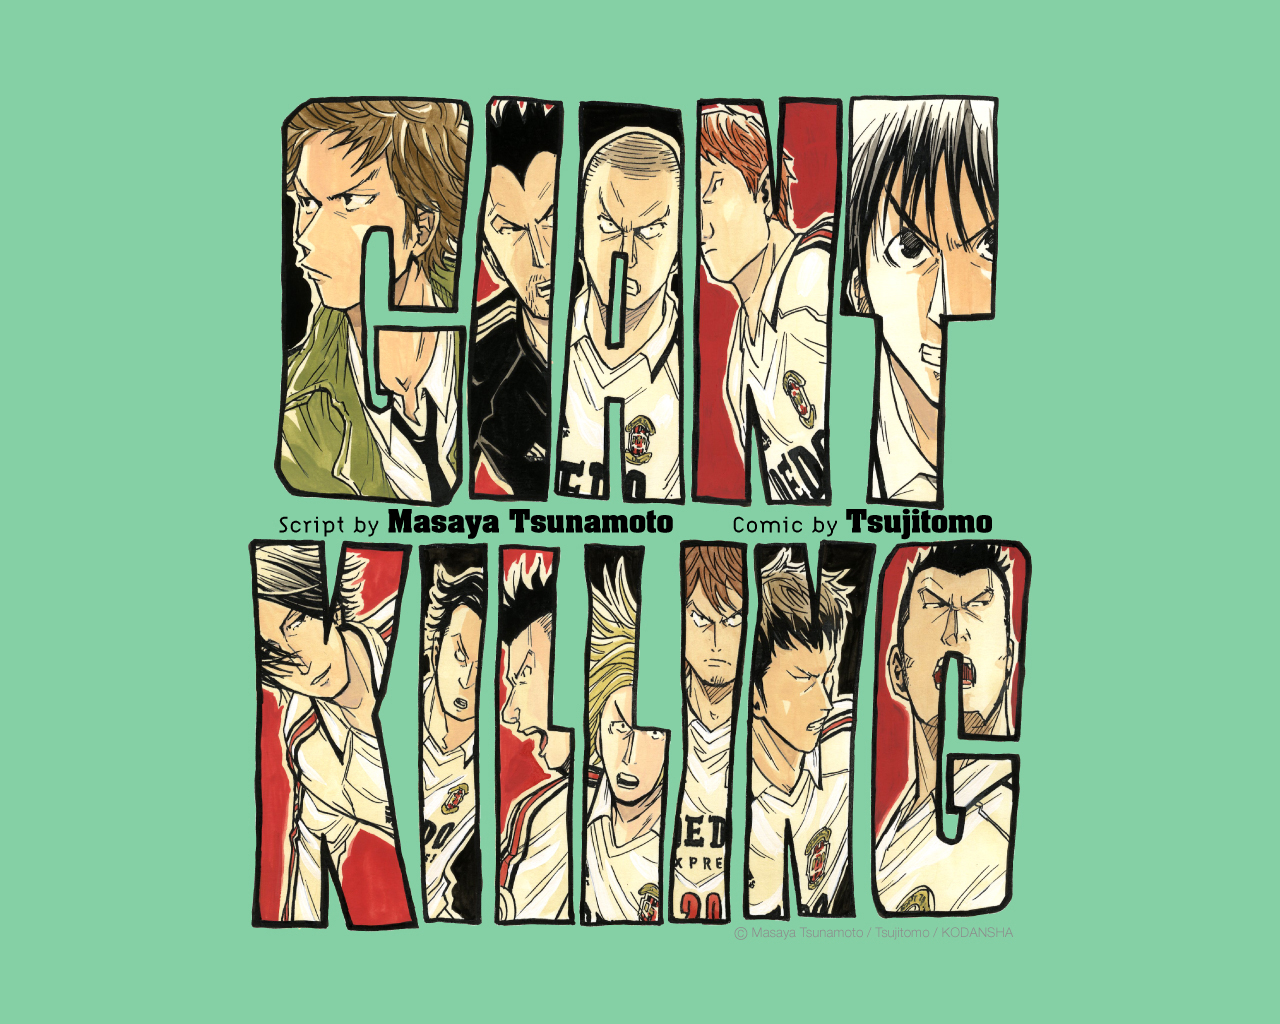 HD wallpaper: Giant Killing, anime, anime boys, Dr Pepper